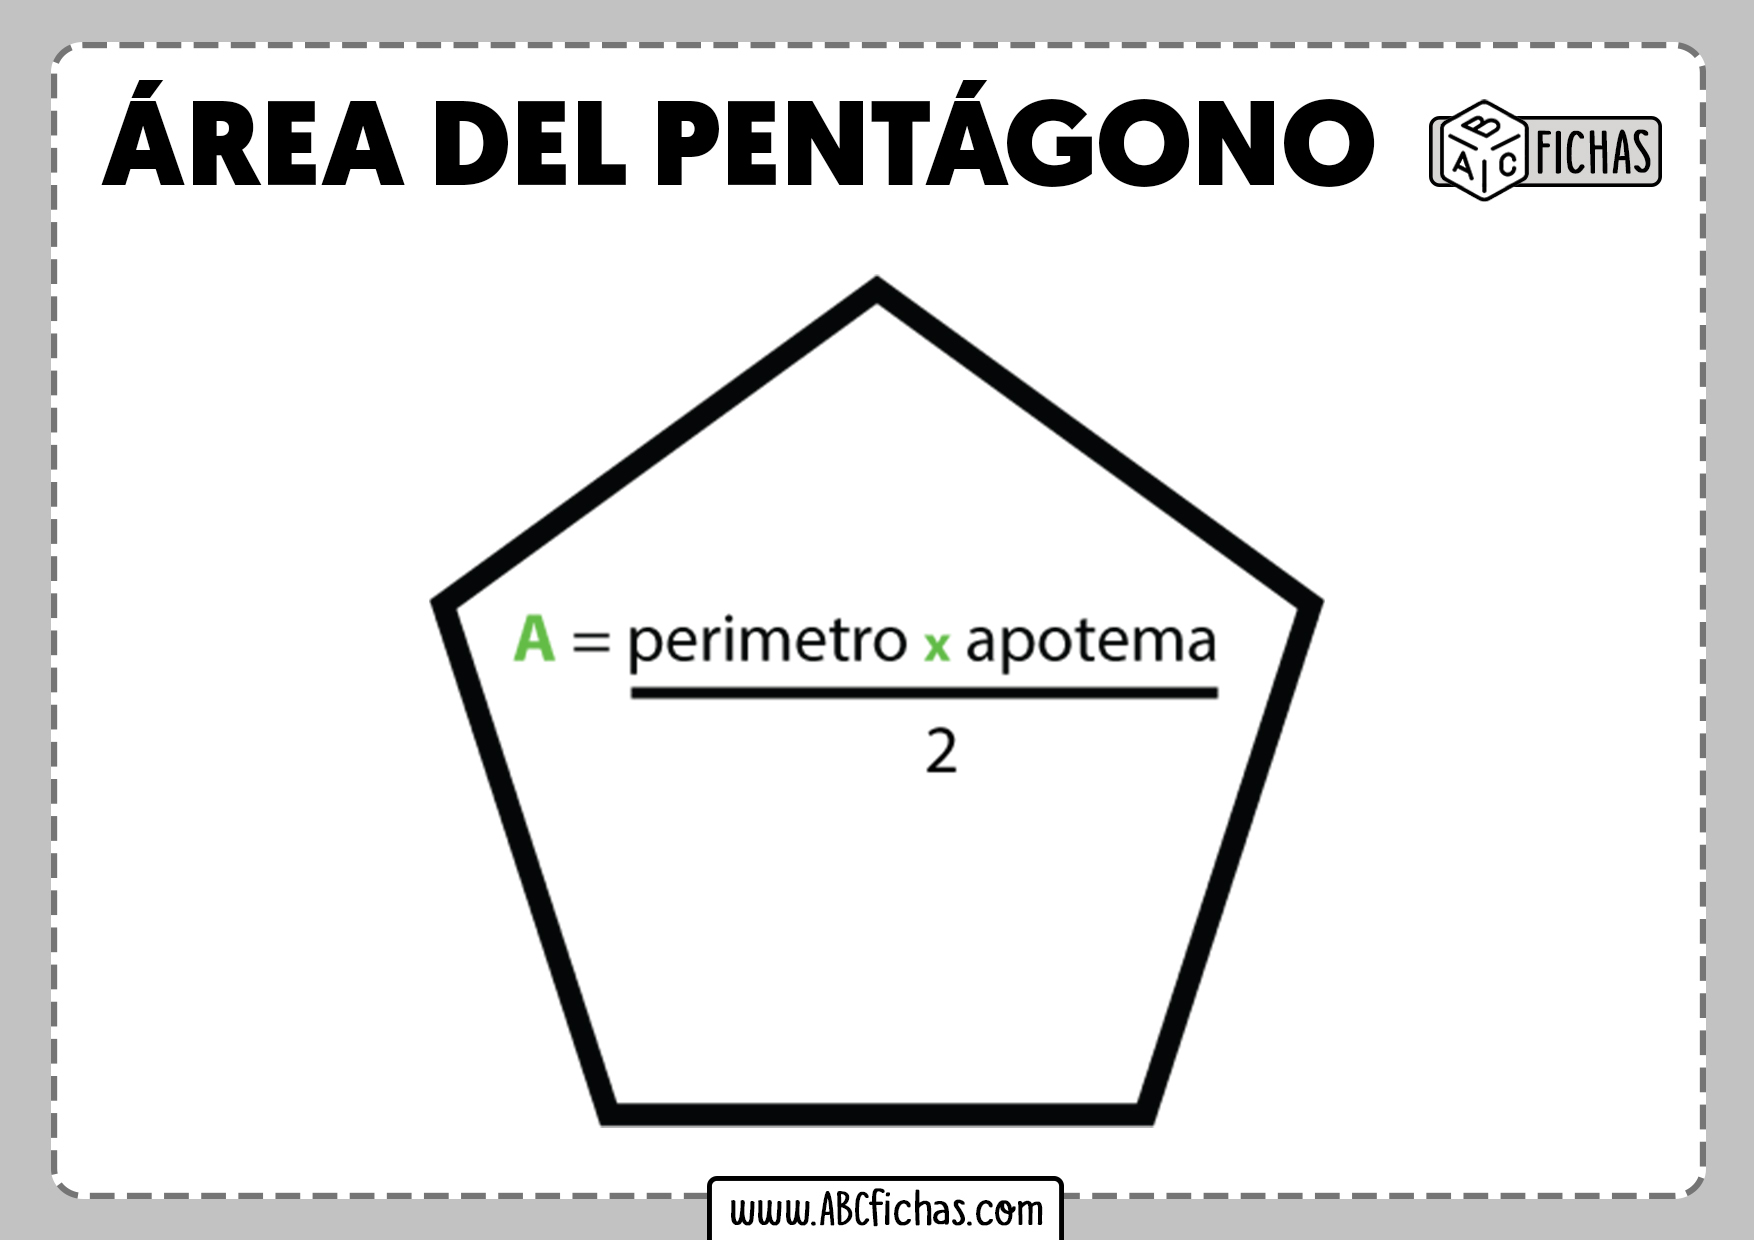 El area del pentagono